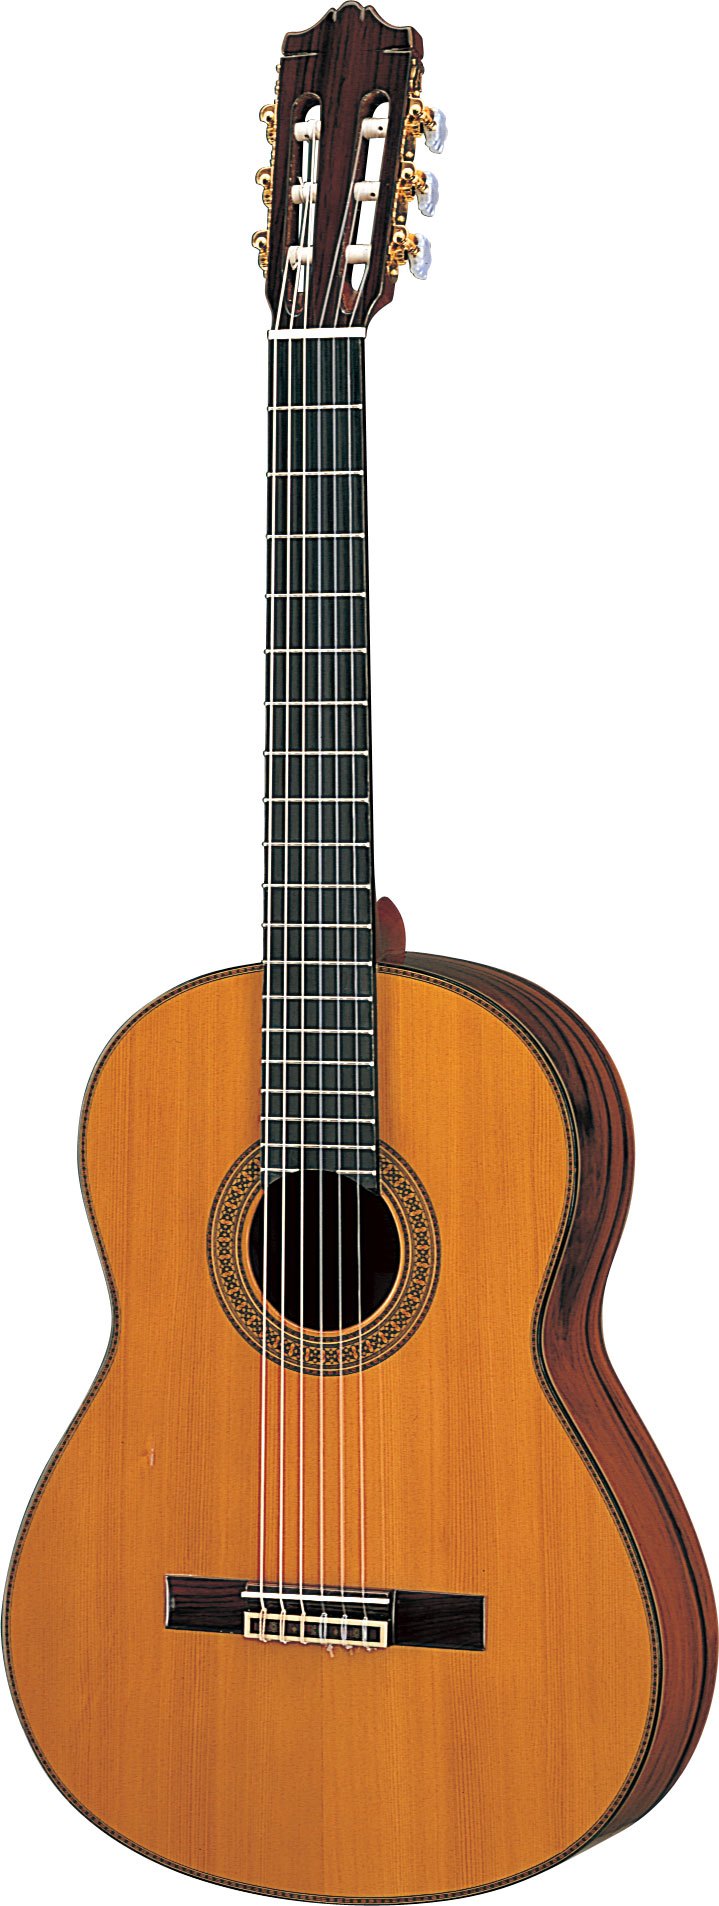 ヤマハ | CG171C - クラシックギター・ナイロン弦ギター - 概要